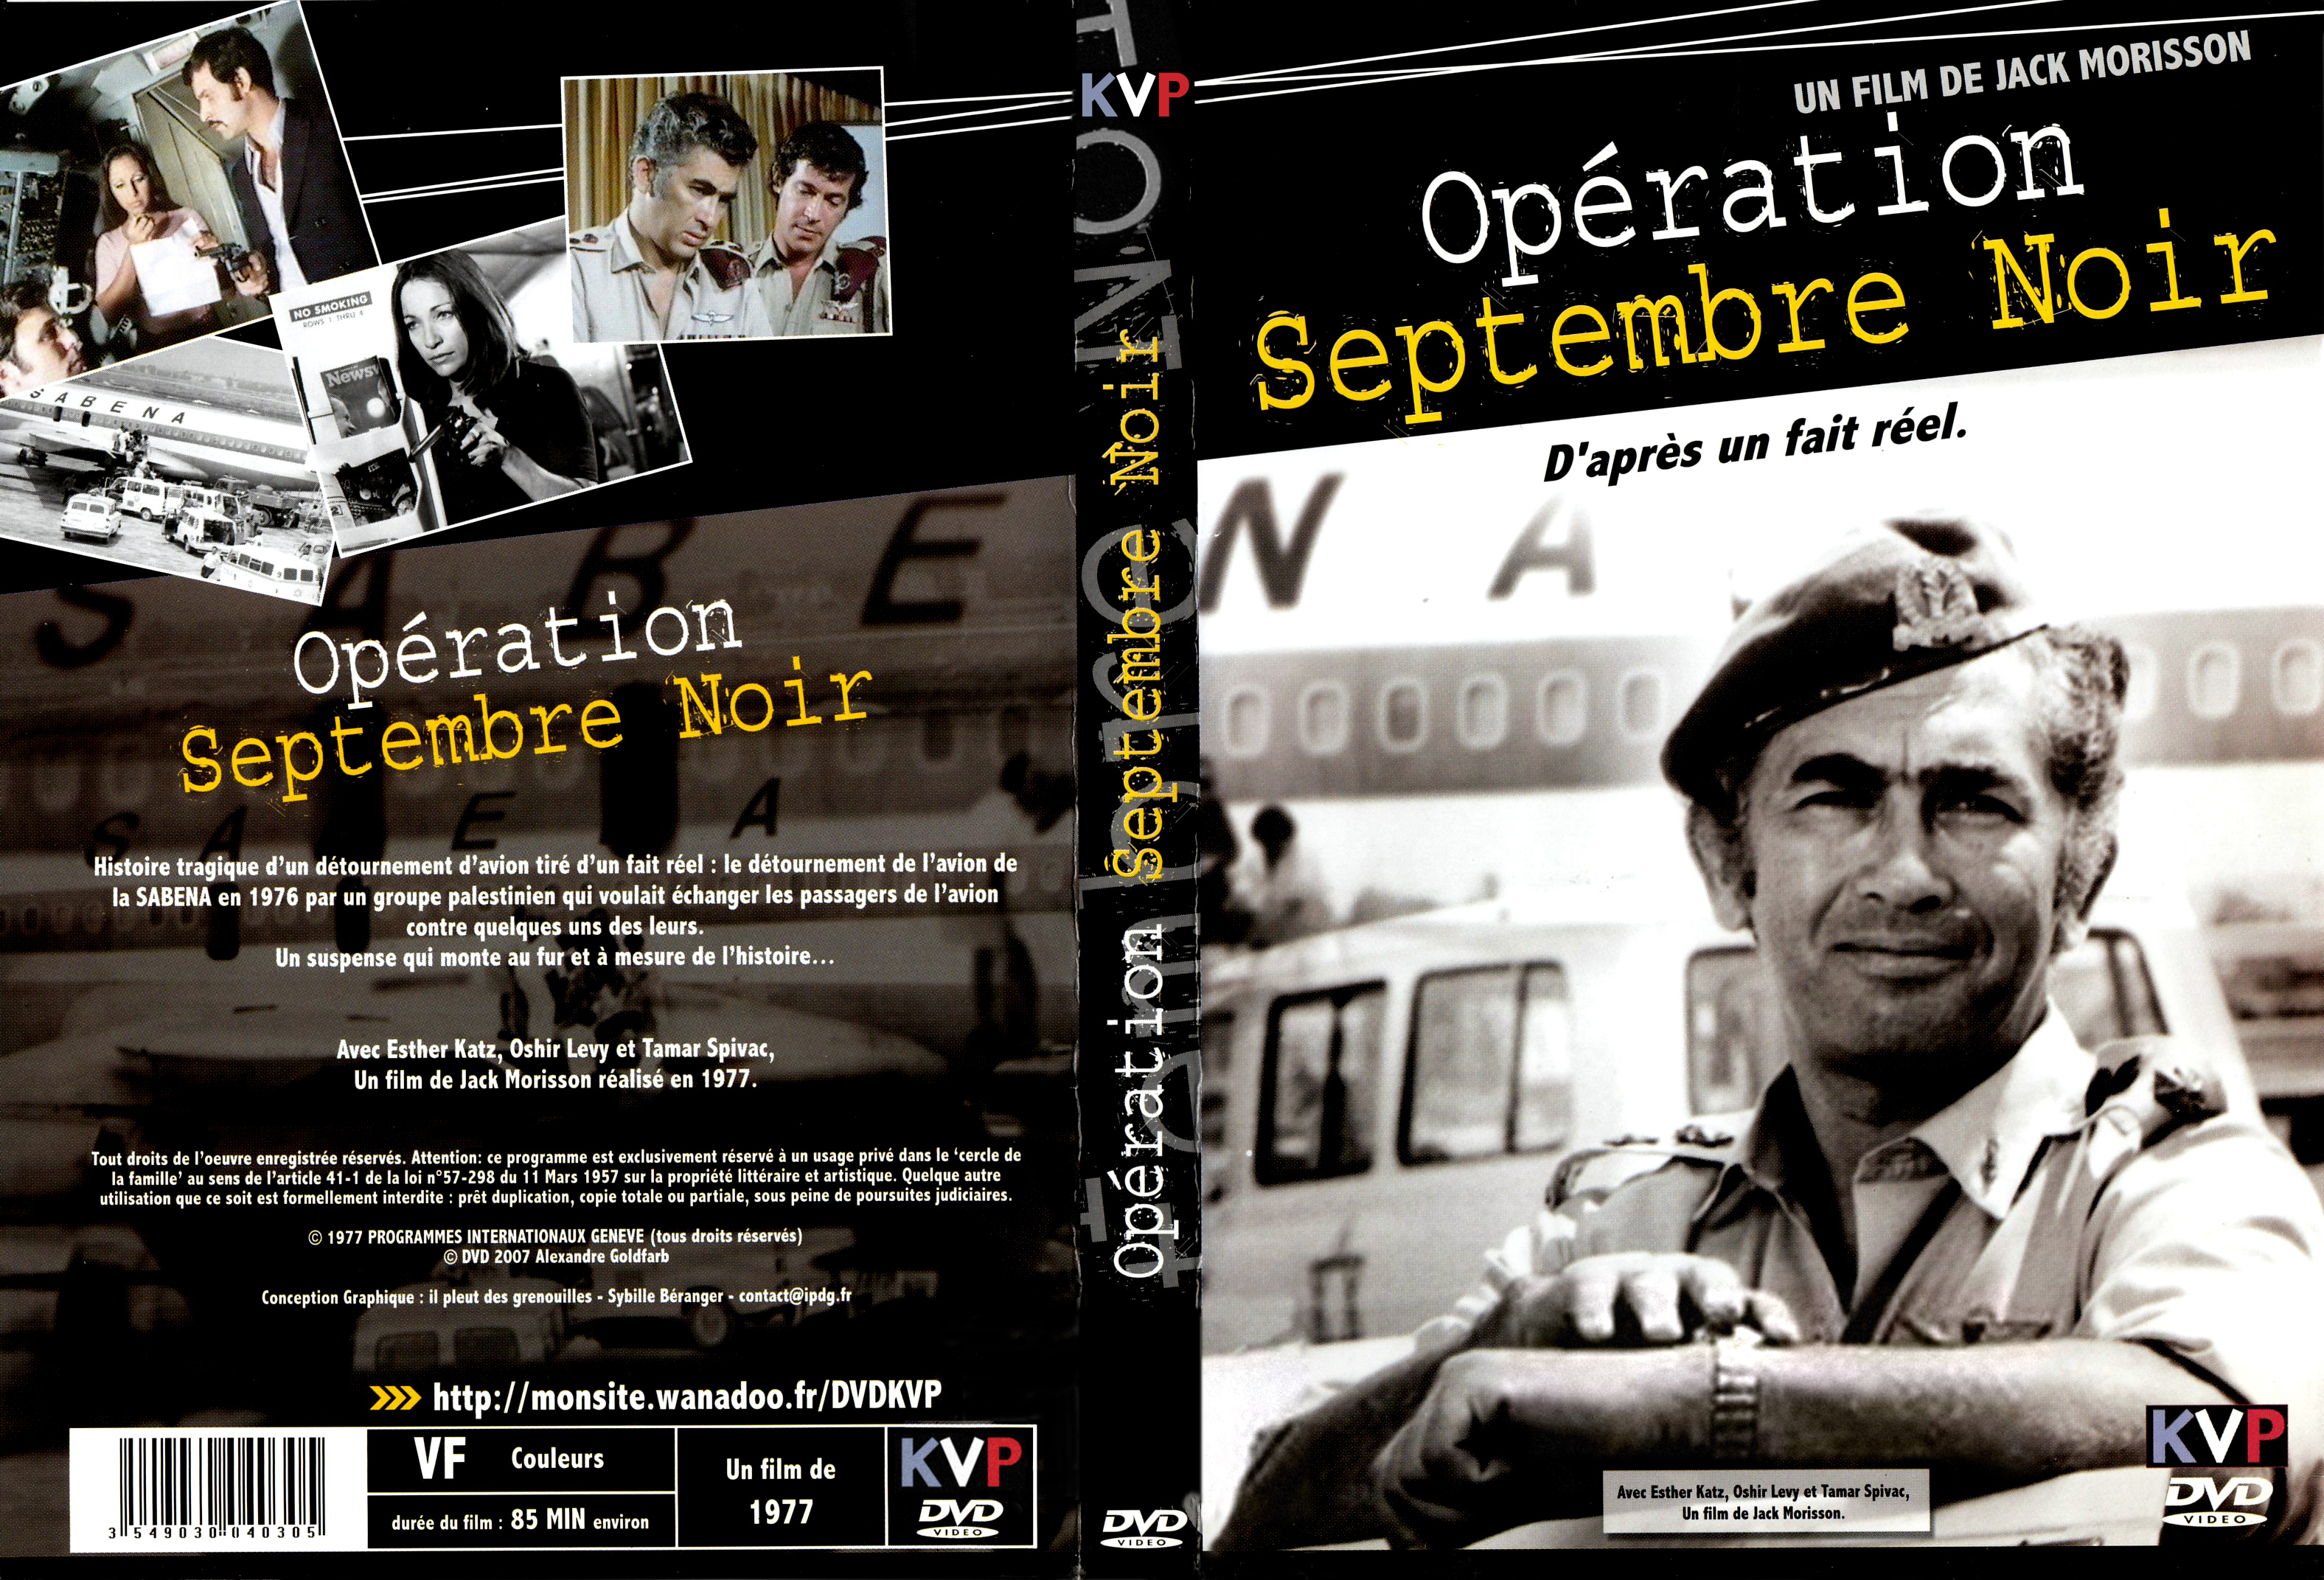 Jaquette DVD OPRATION SEPTEMBRE NOIR